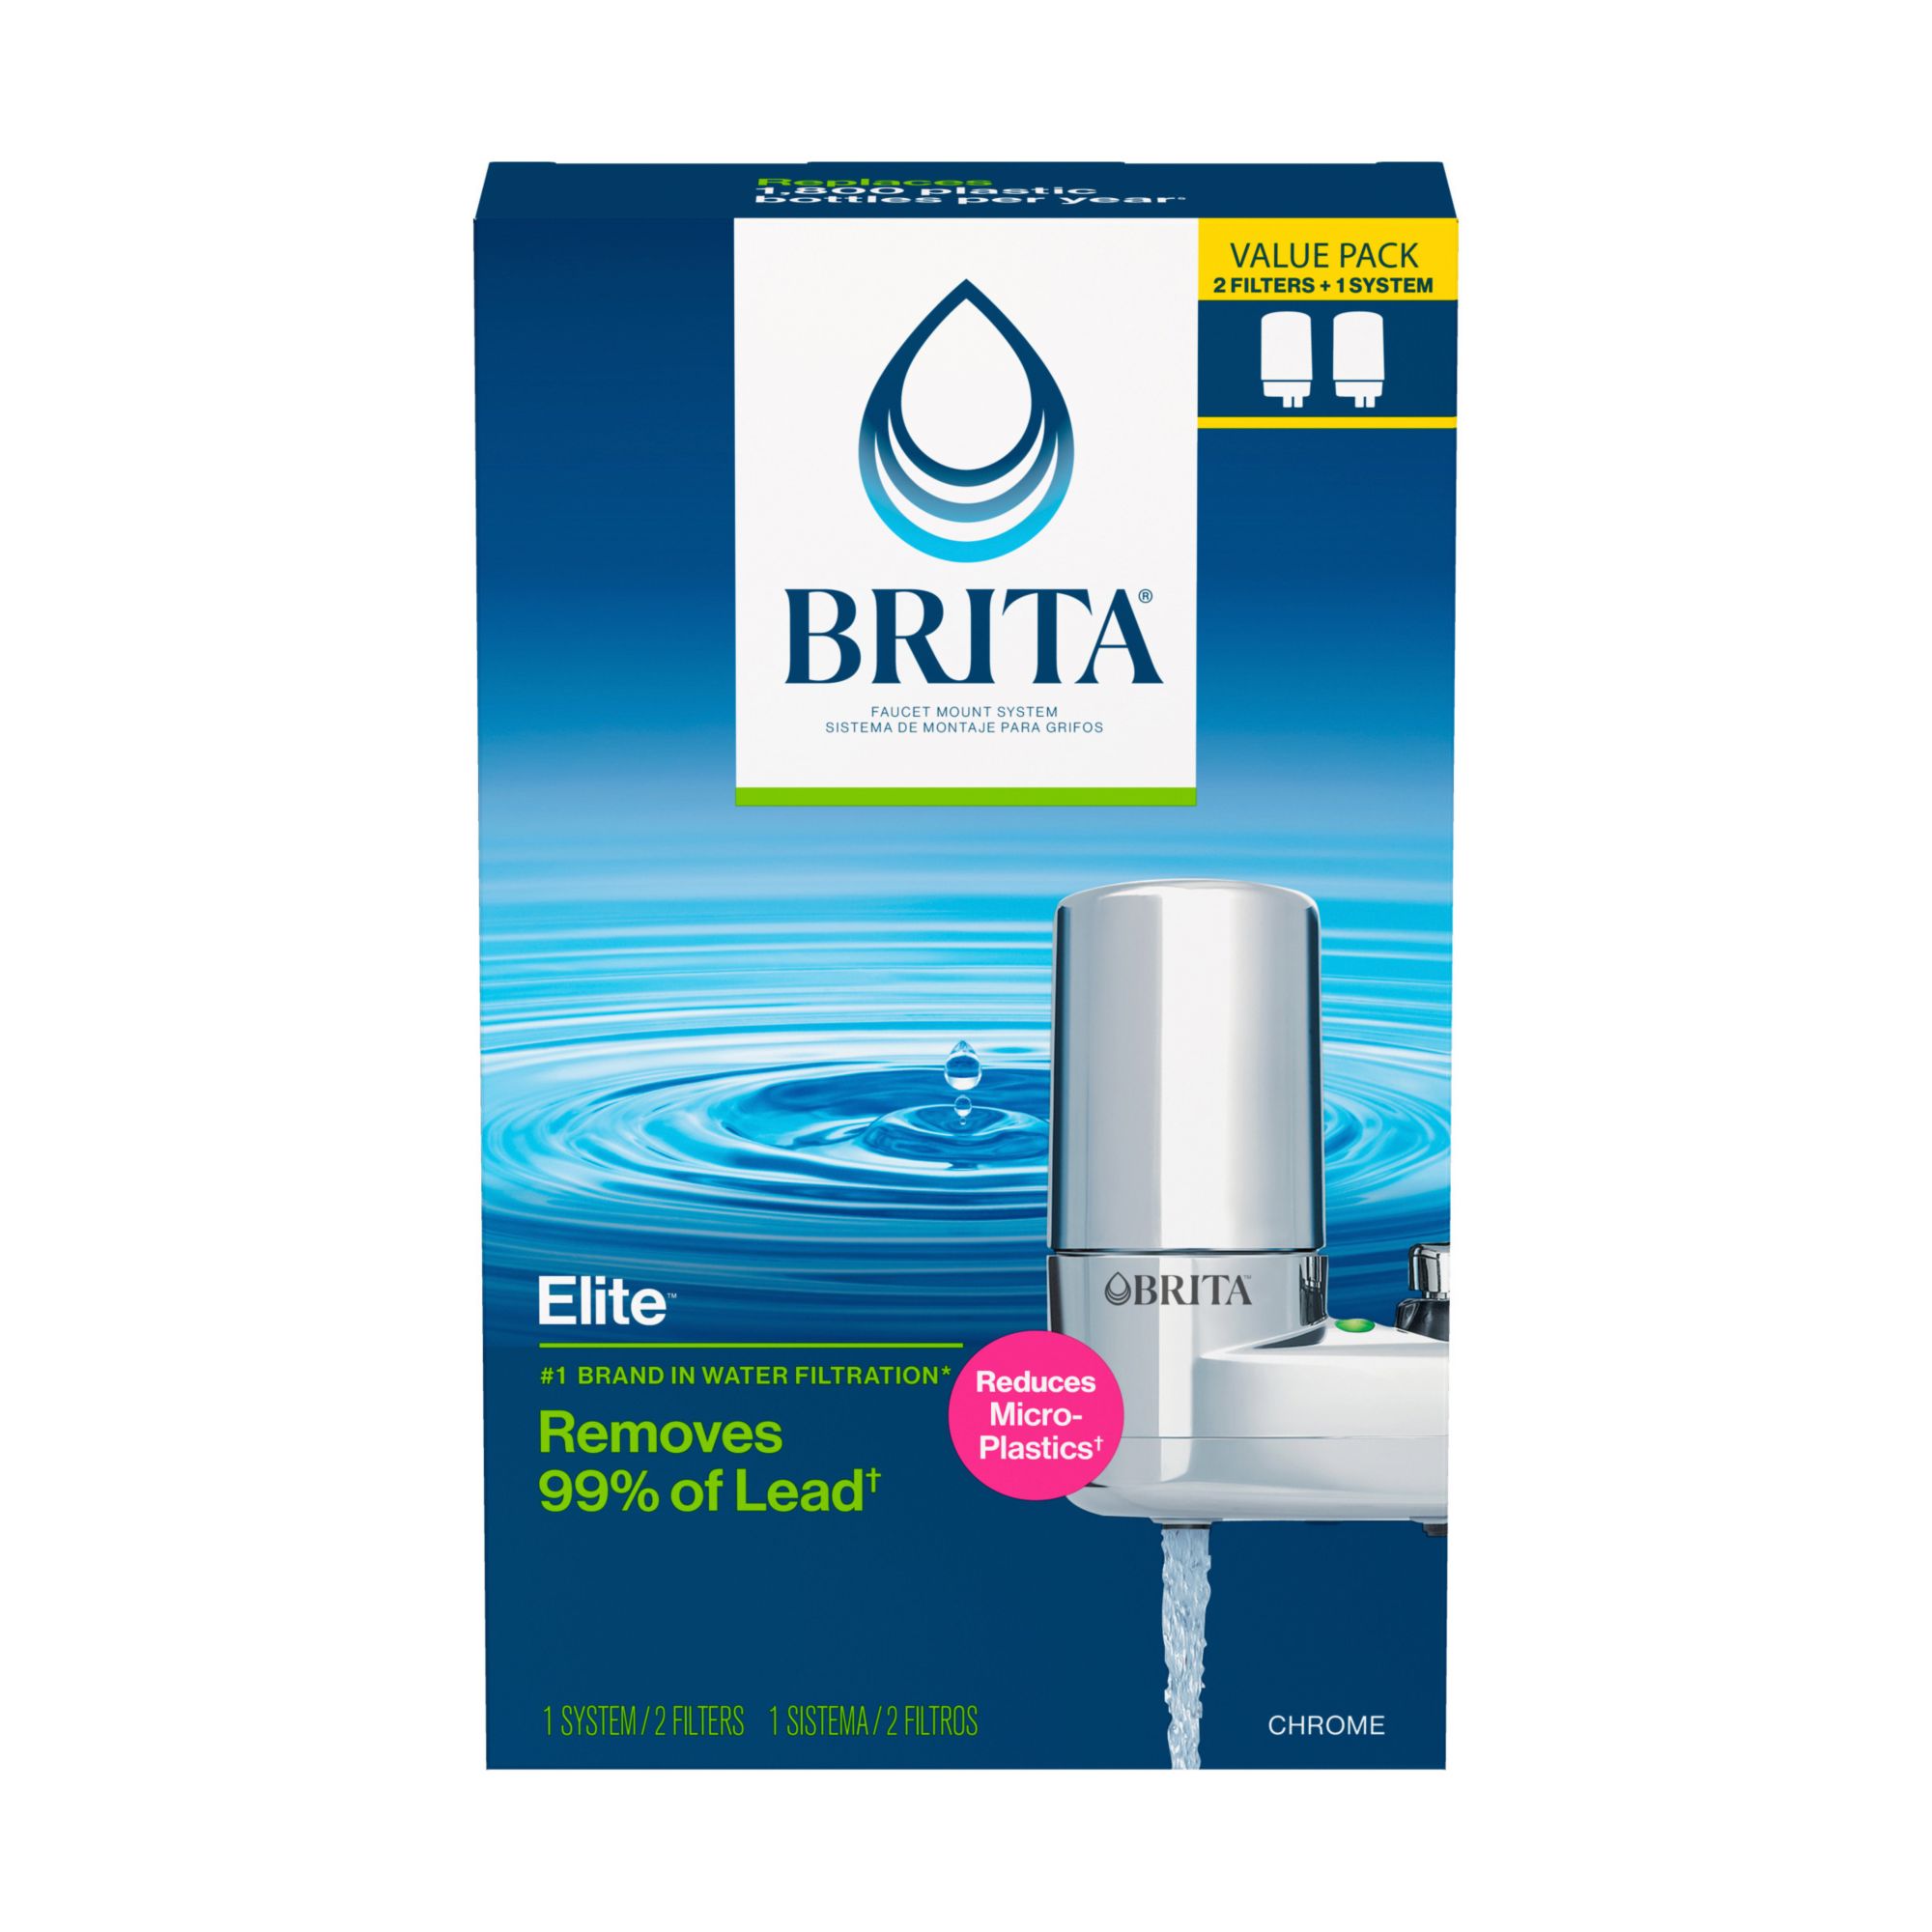 Brita Faucet Mount Replacement Filter at